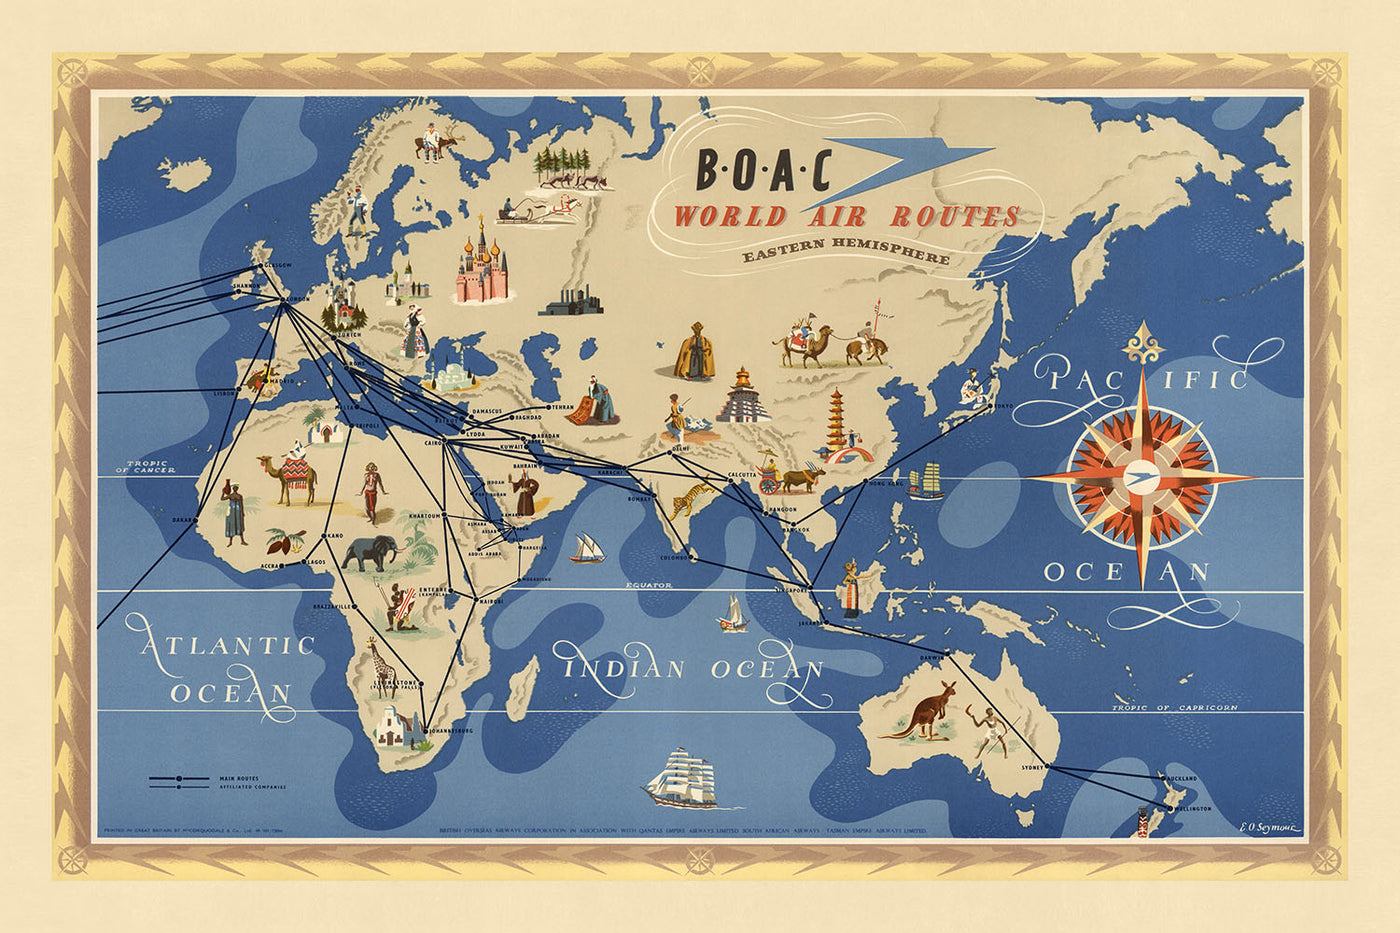 Mapa del Viejo Mundo de rutas aéreas del hemisferio oriental por BOAC, 1949: ilustraciones pictóricas, estilo temático, representación de la aviación de mediados del siglo XX